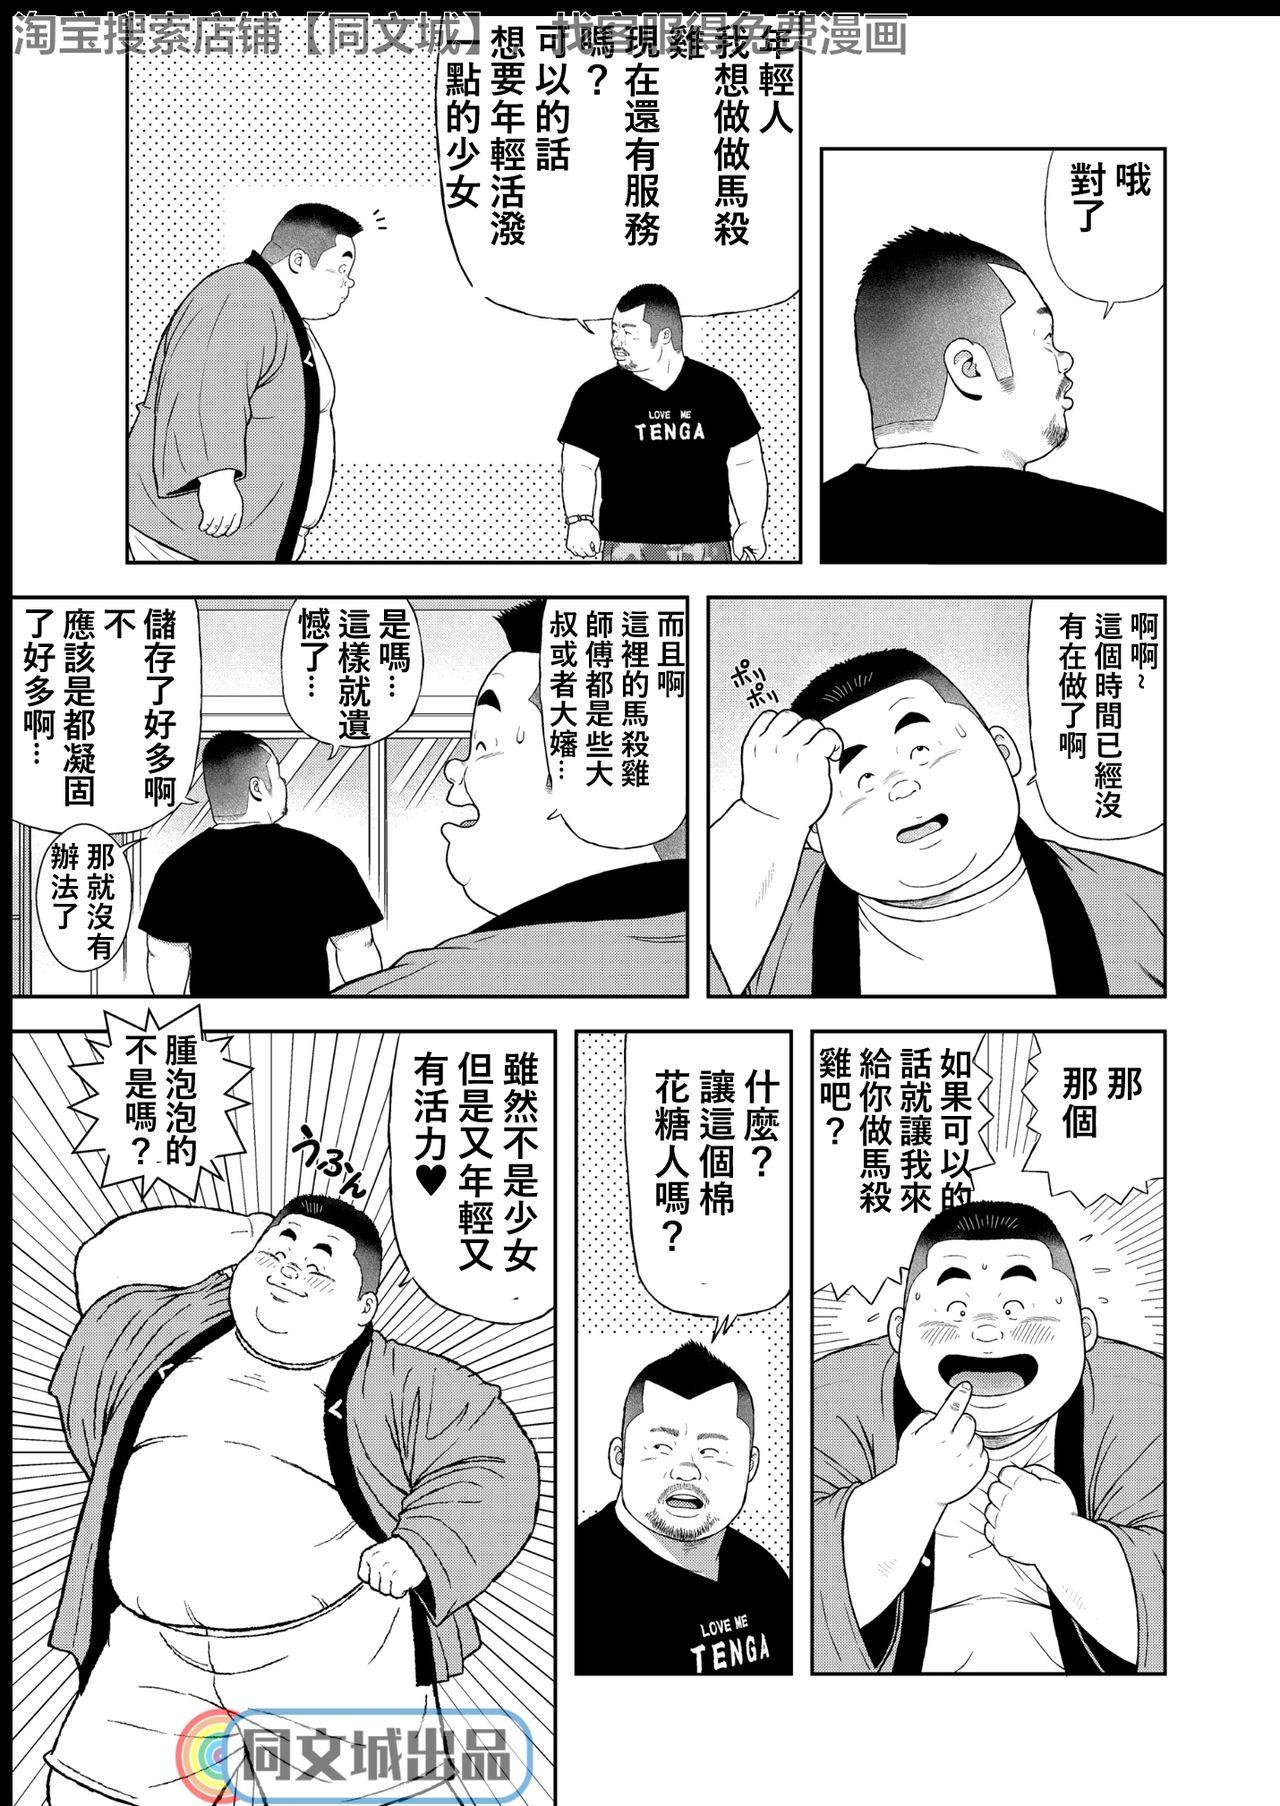 Short Hair Kunoyu Yonhatsume Geinin no Saga - Original Amazing - Page 5